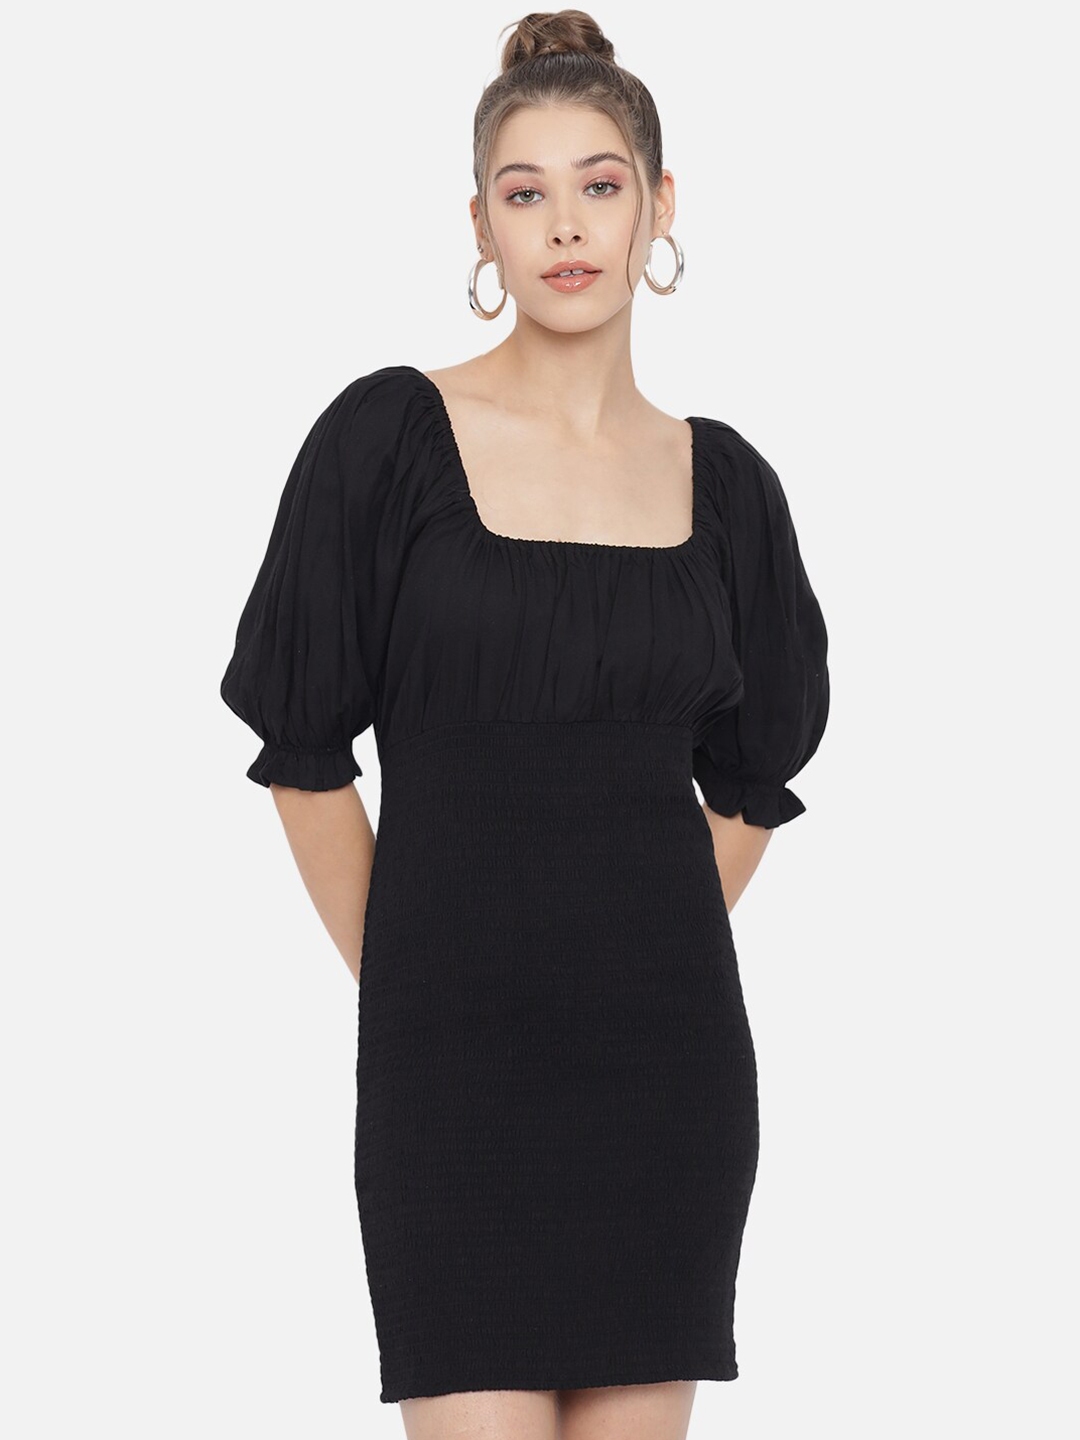 Buy Trend Arrest Black Sheath Dress - Dresses for Women 16549636 | Myntra